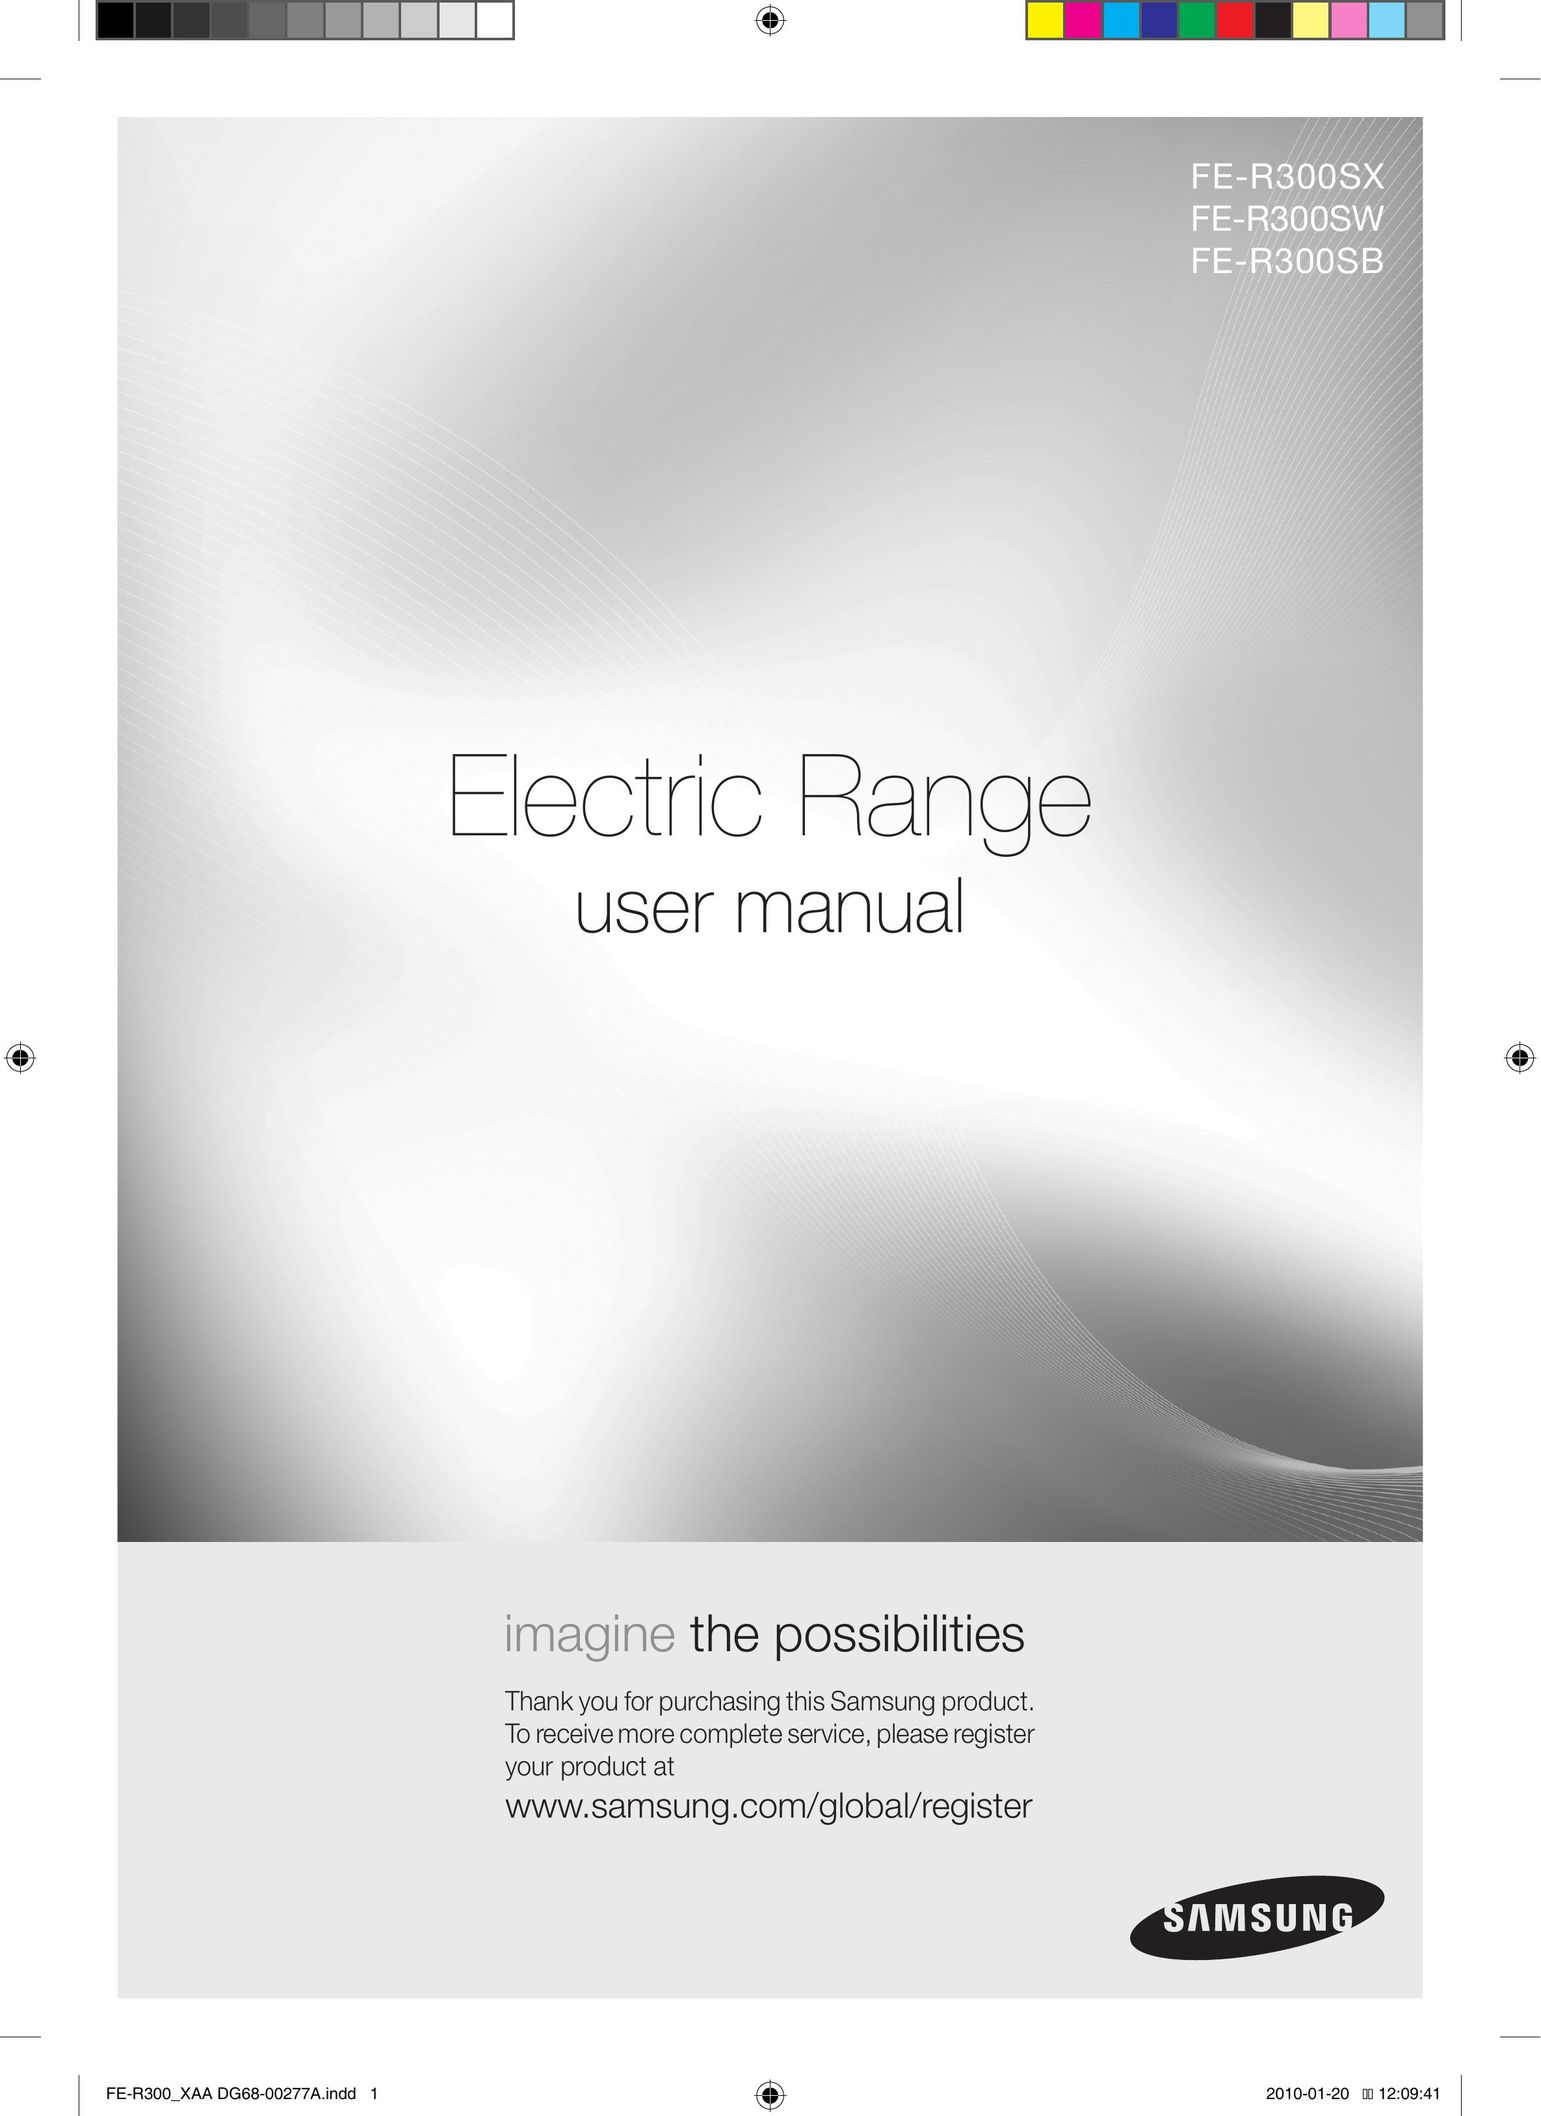 Samsung FER300 Range User Manual